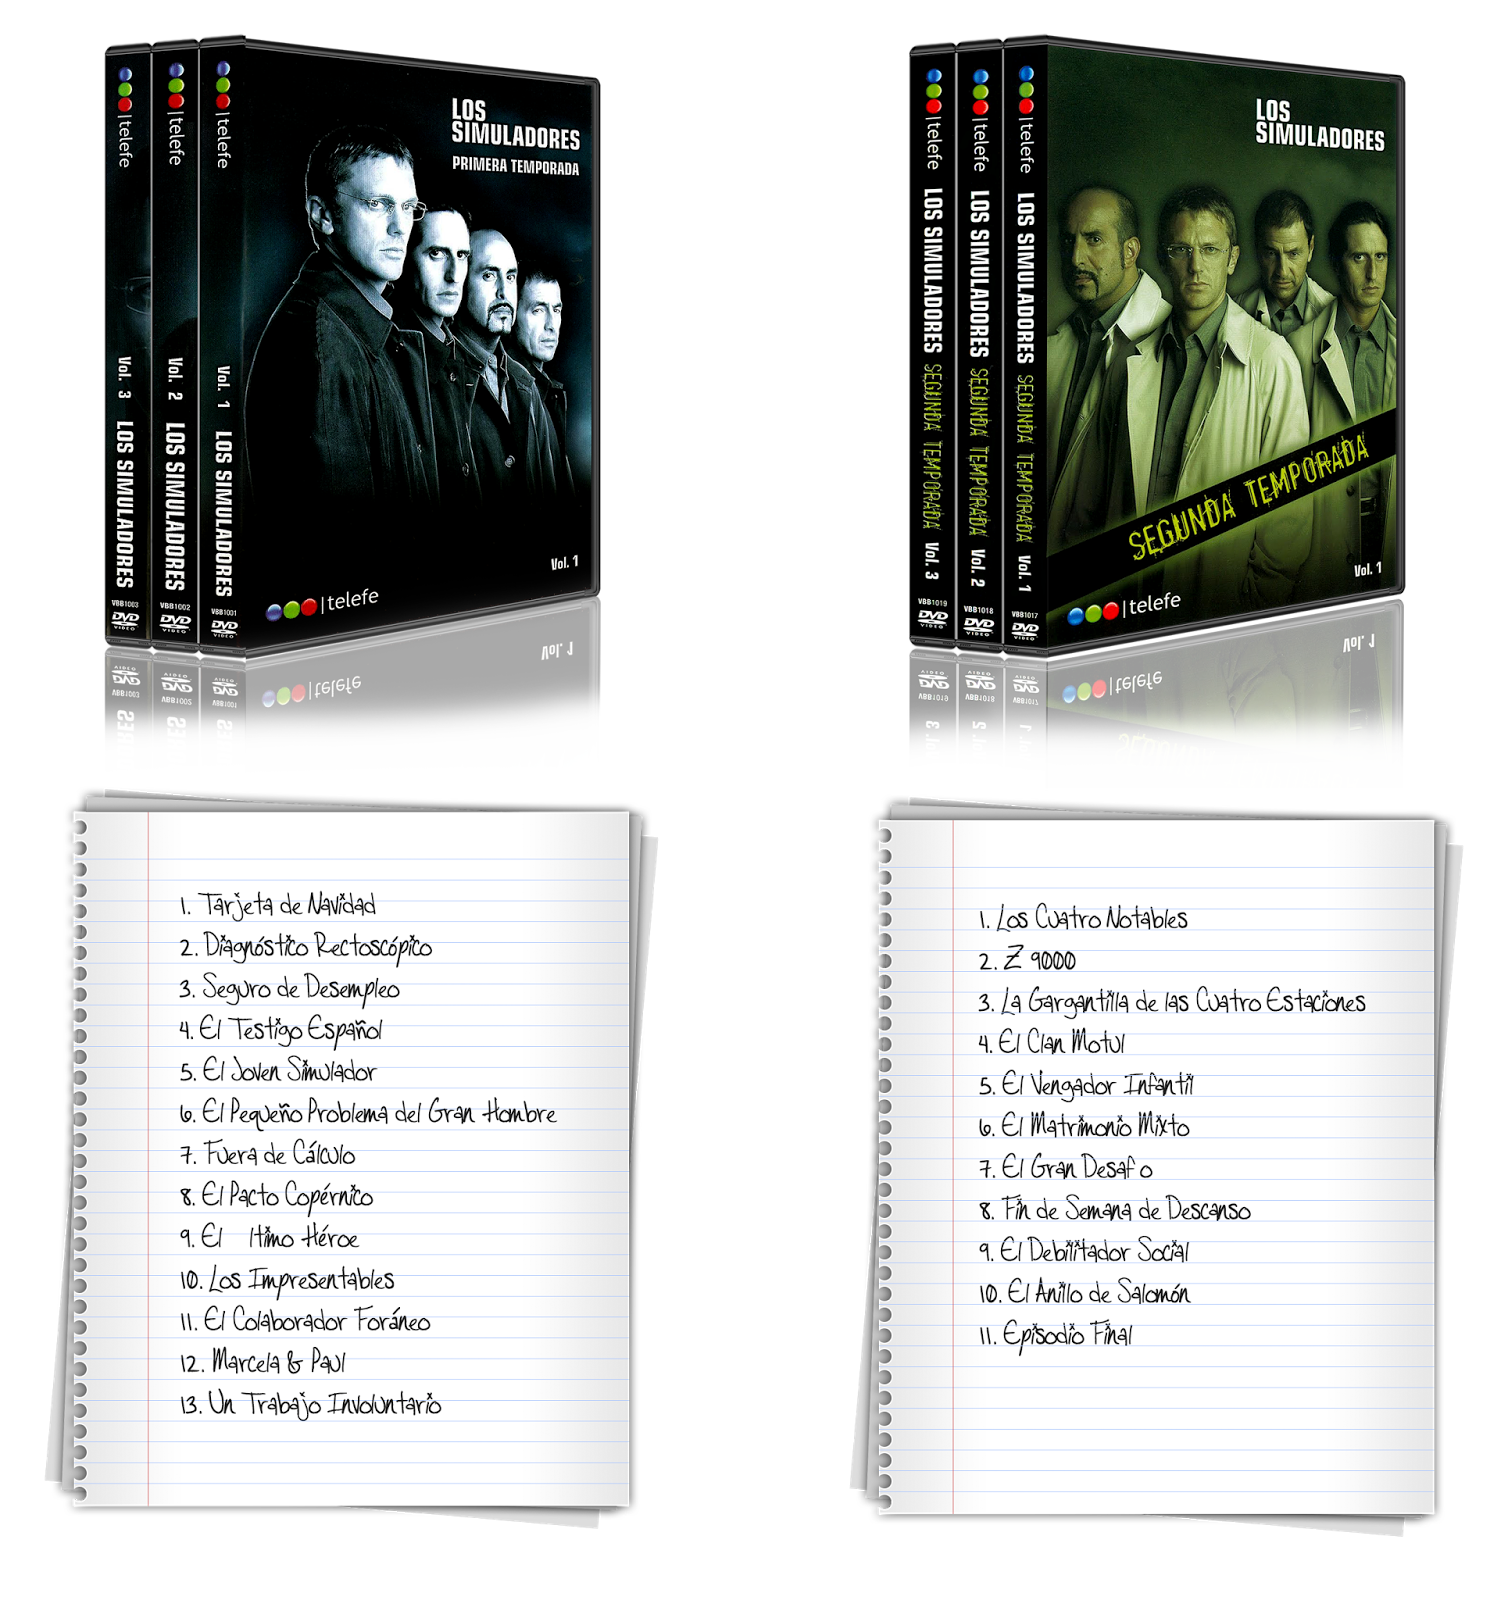 Los Simuladores: Serie Completa (2002-2004) [6 DVD5] 28,8 GB